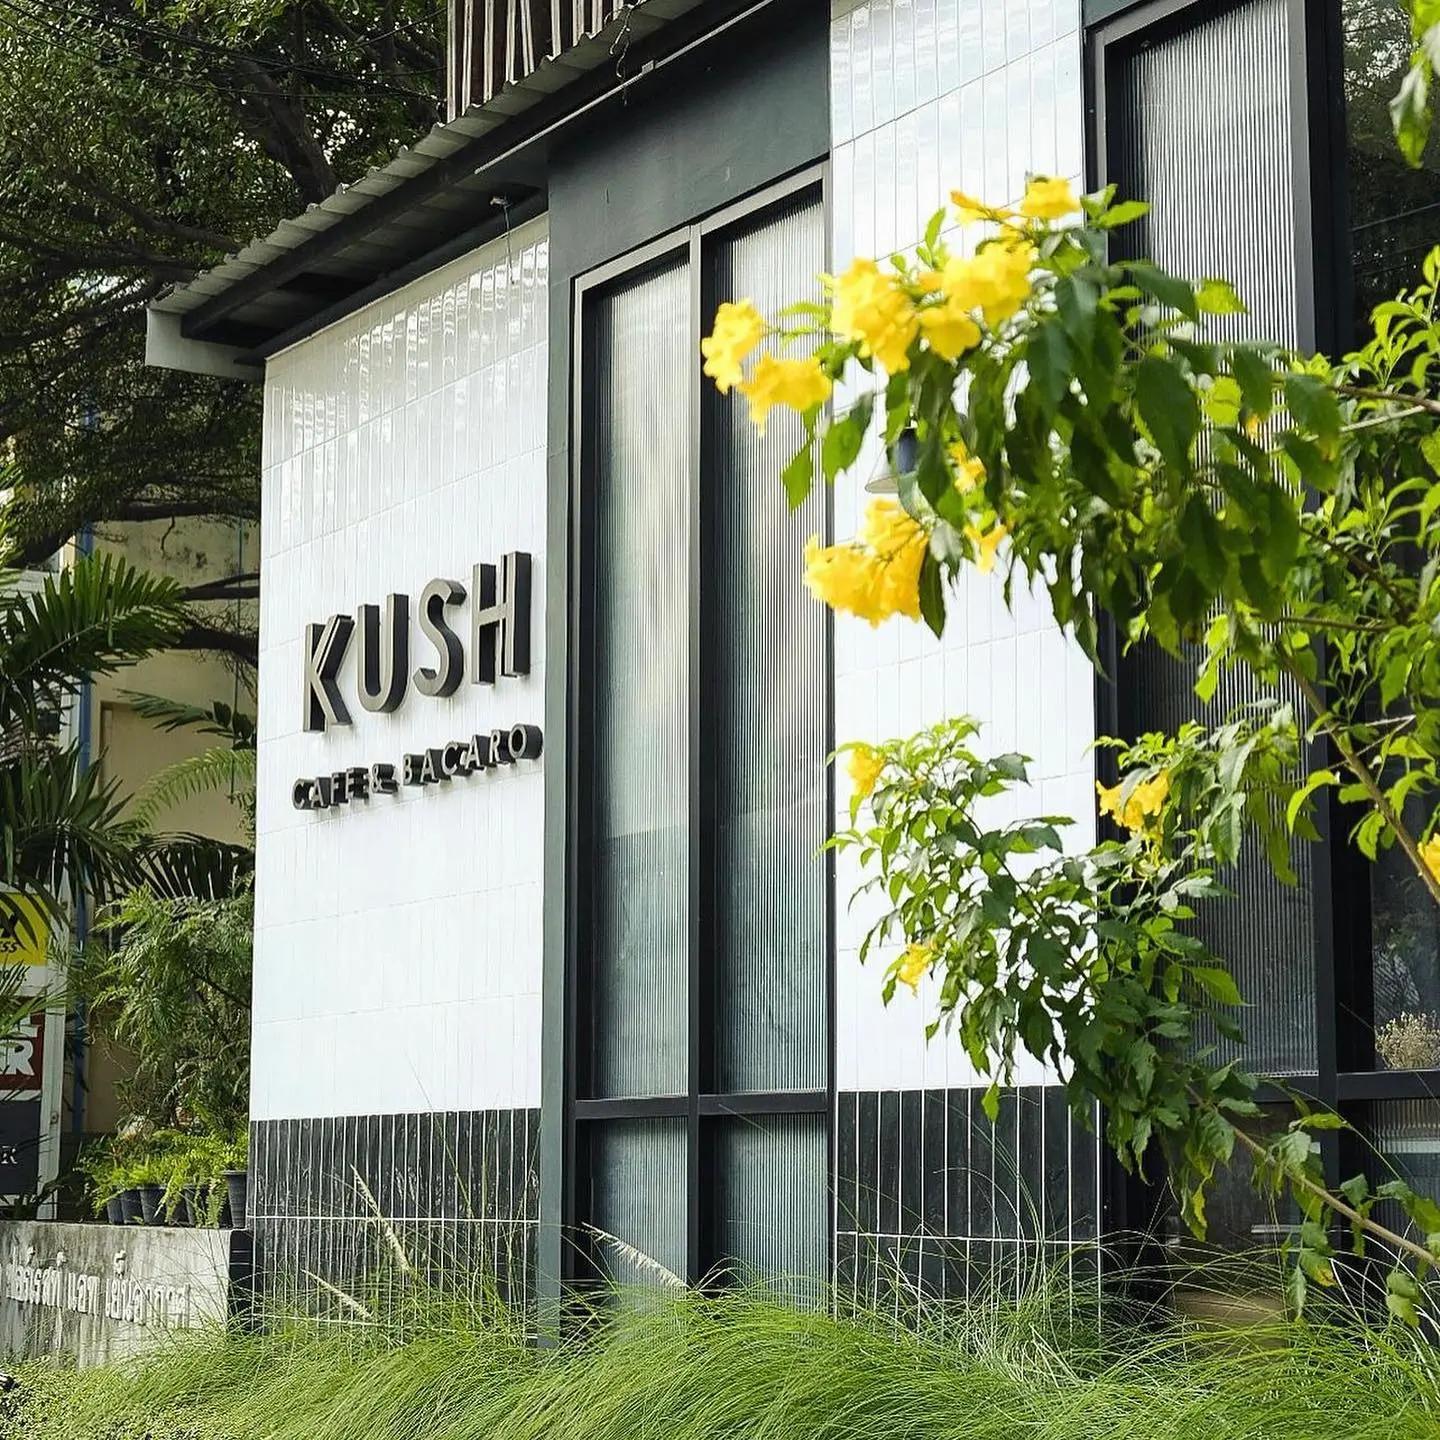 Kush Cafe & Bacaro